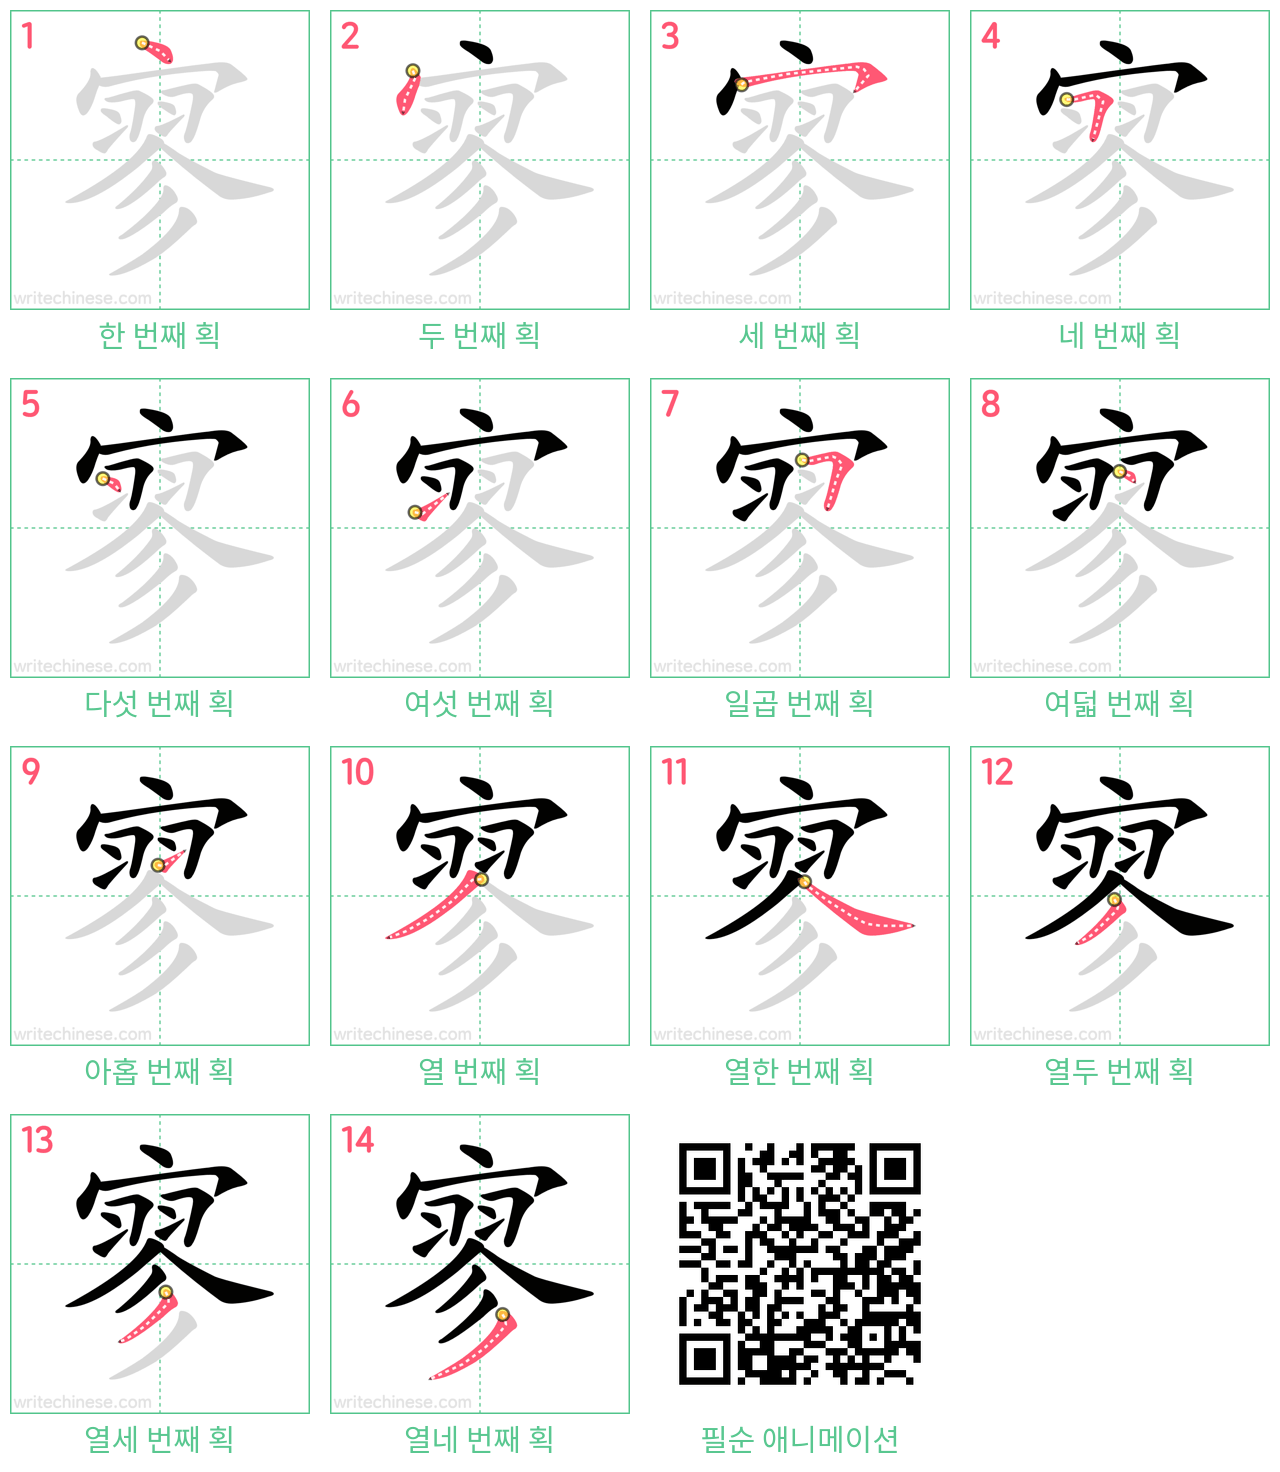 寥 step-by-step stroke order diagrams